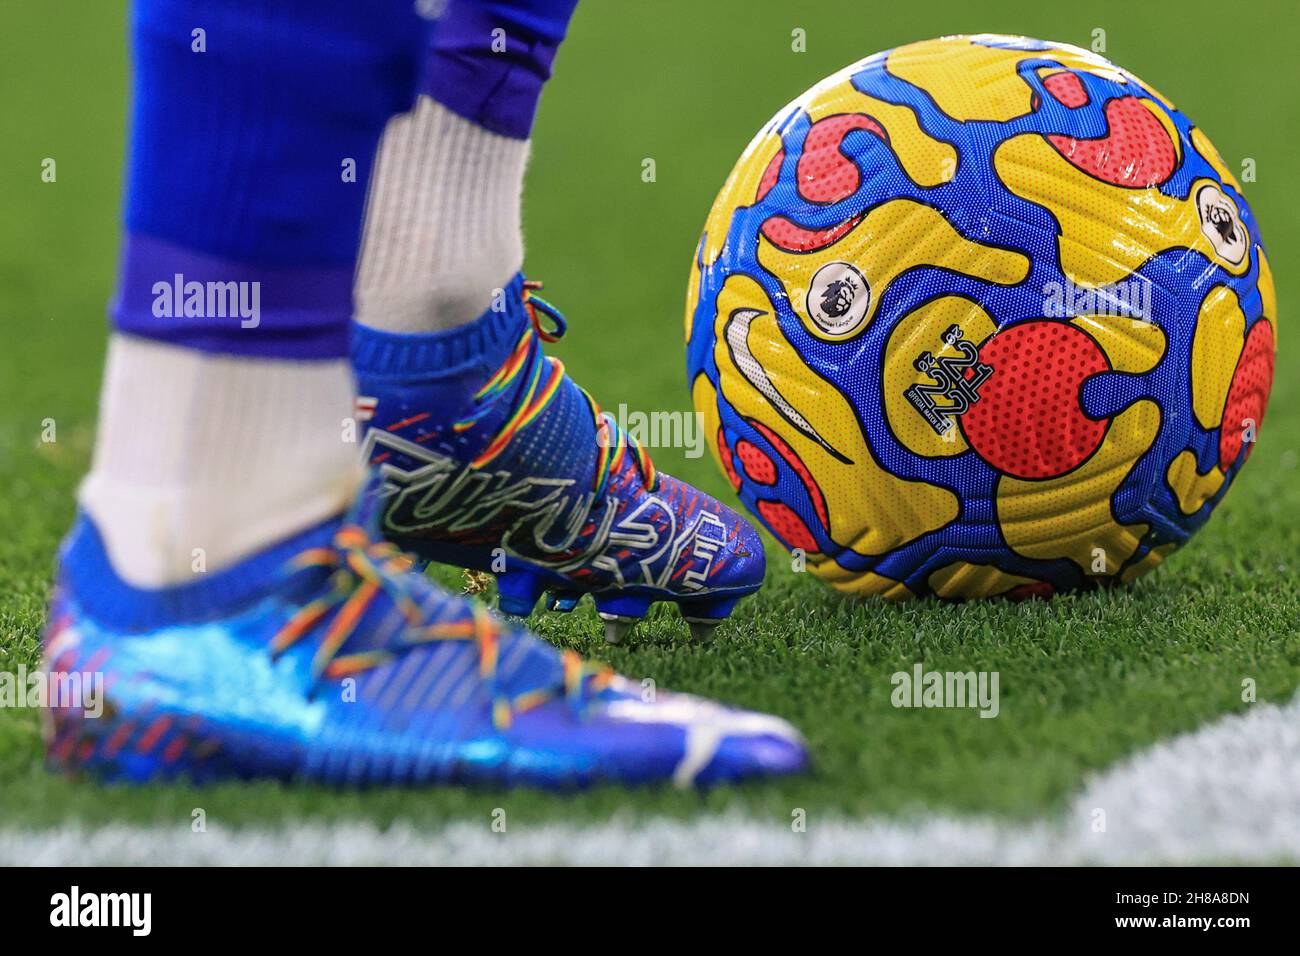 James Maddison #10 de las botas Puma de Leicester City y los cordones  arcoiris mientras se prepara para tomar una esquina con el balón de invierno  Nike de la Premier League Fotografía